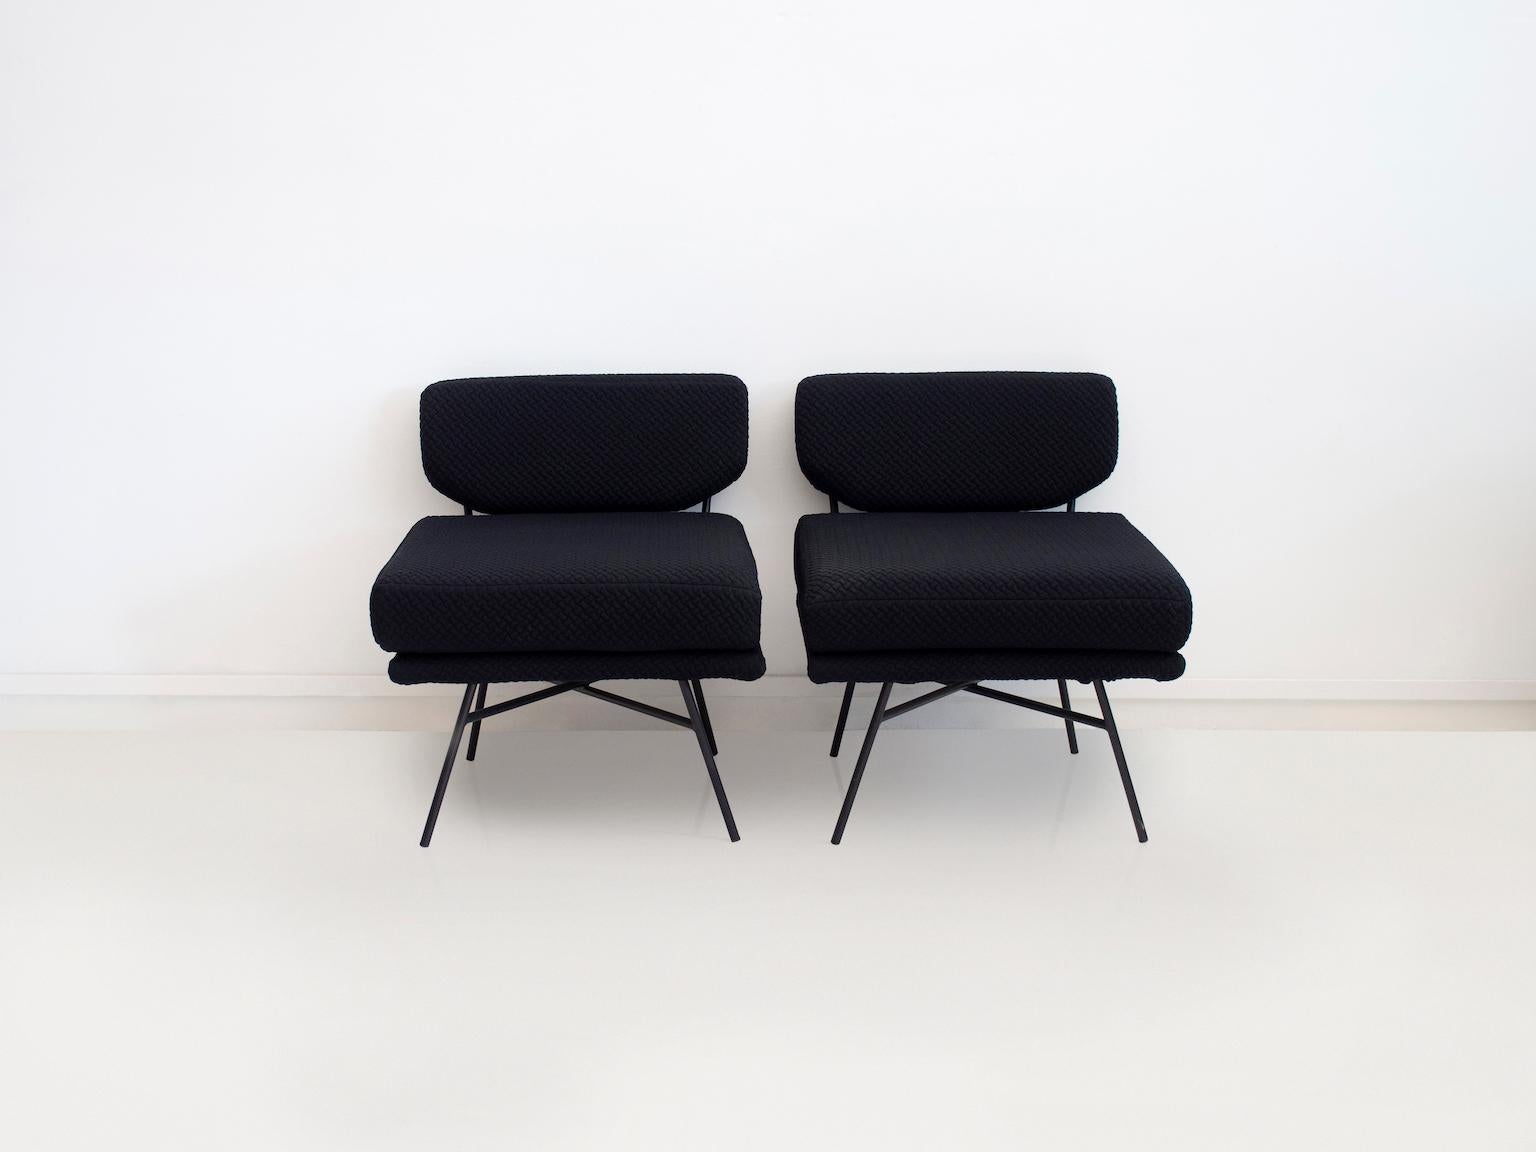 Paire de chaises 'Elettra' conçues à l'origine par B.B.P.R. en 1954, Italie. Cette paire de chaises de salon est produite par Arflex vers 2018, avec un cadre en acier tubulaire noir et un revêtement en tissu gaufré noir.

La chaise longue